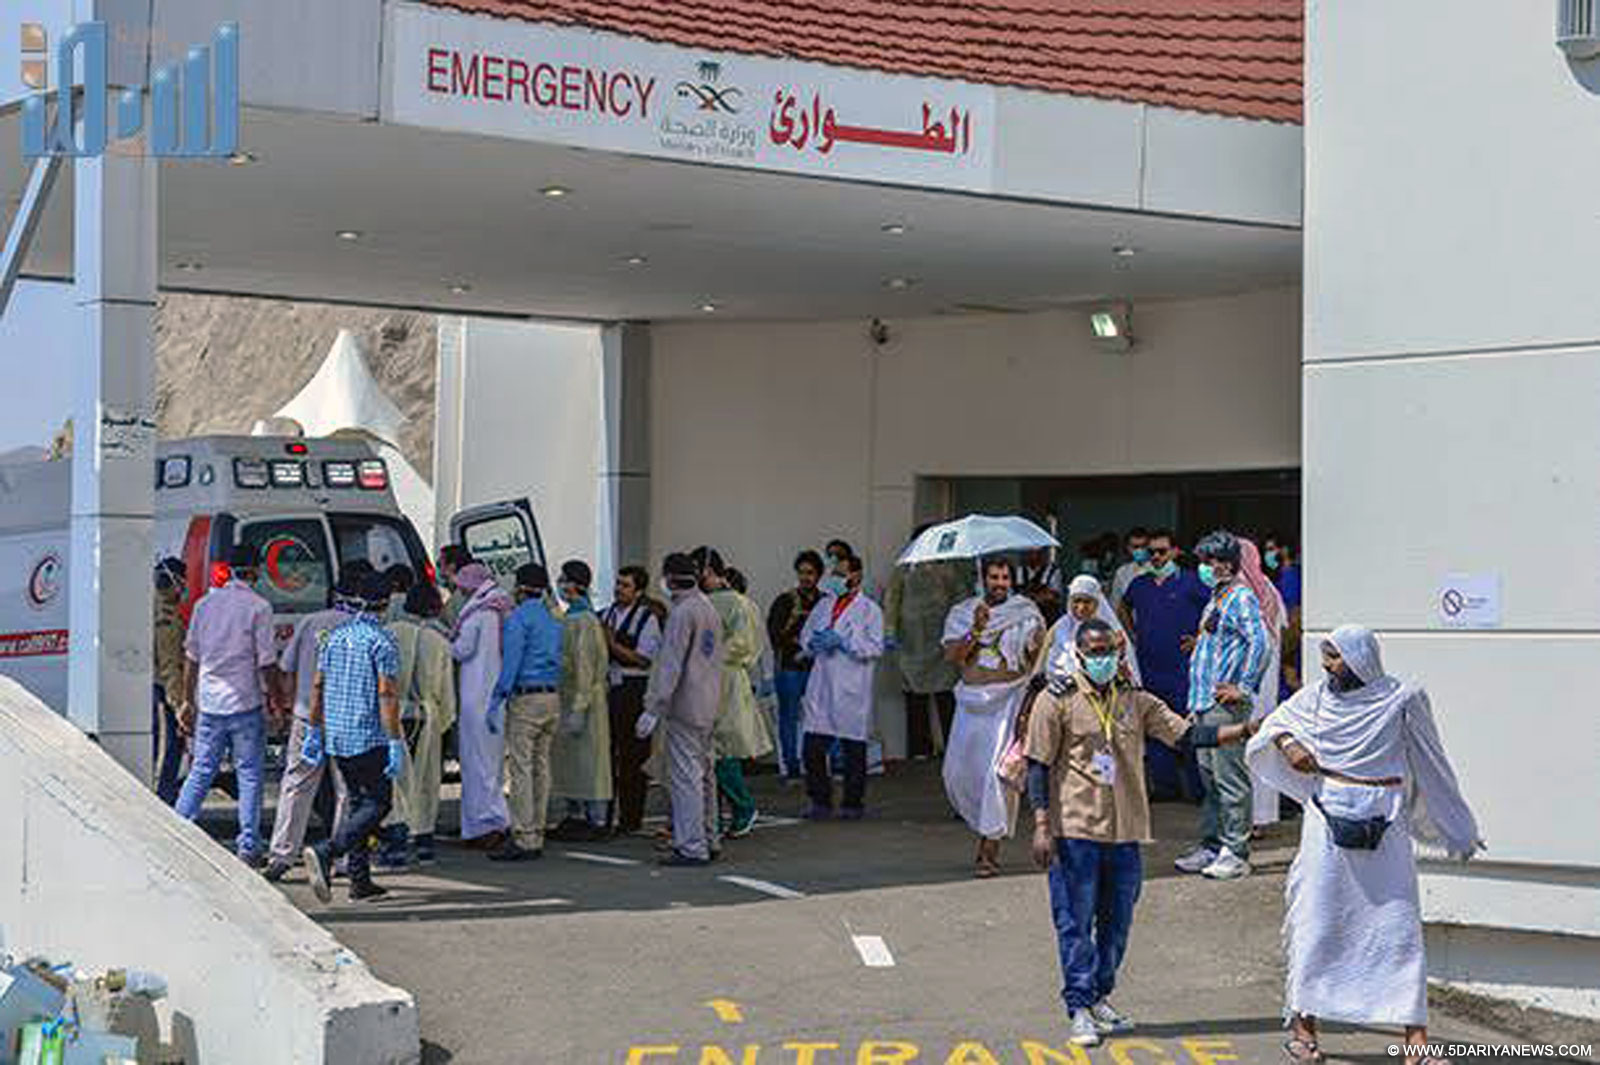 Health workers help the injured near the Saudi Arabia